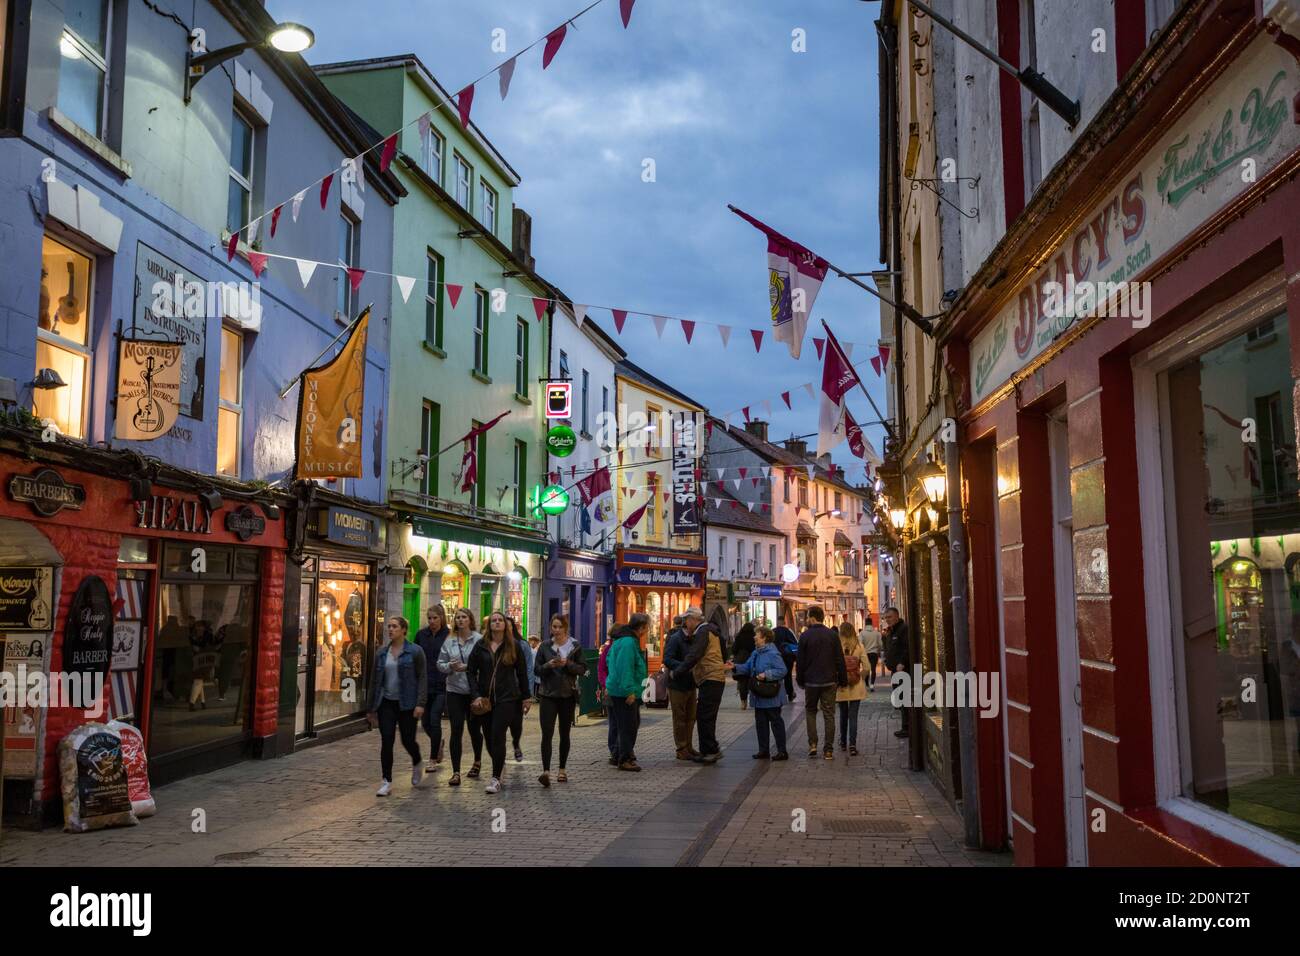 CITTÀ DI GALWAY, IRLANDA - 4 maggio 2018: Turisti che camminano attraverso High Street nella popolare zona del quartiere Latino della città di Galway di notte. Foto Stock